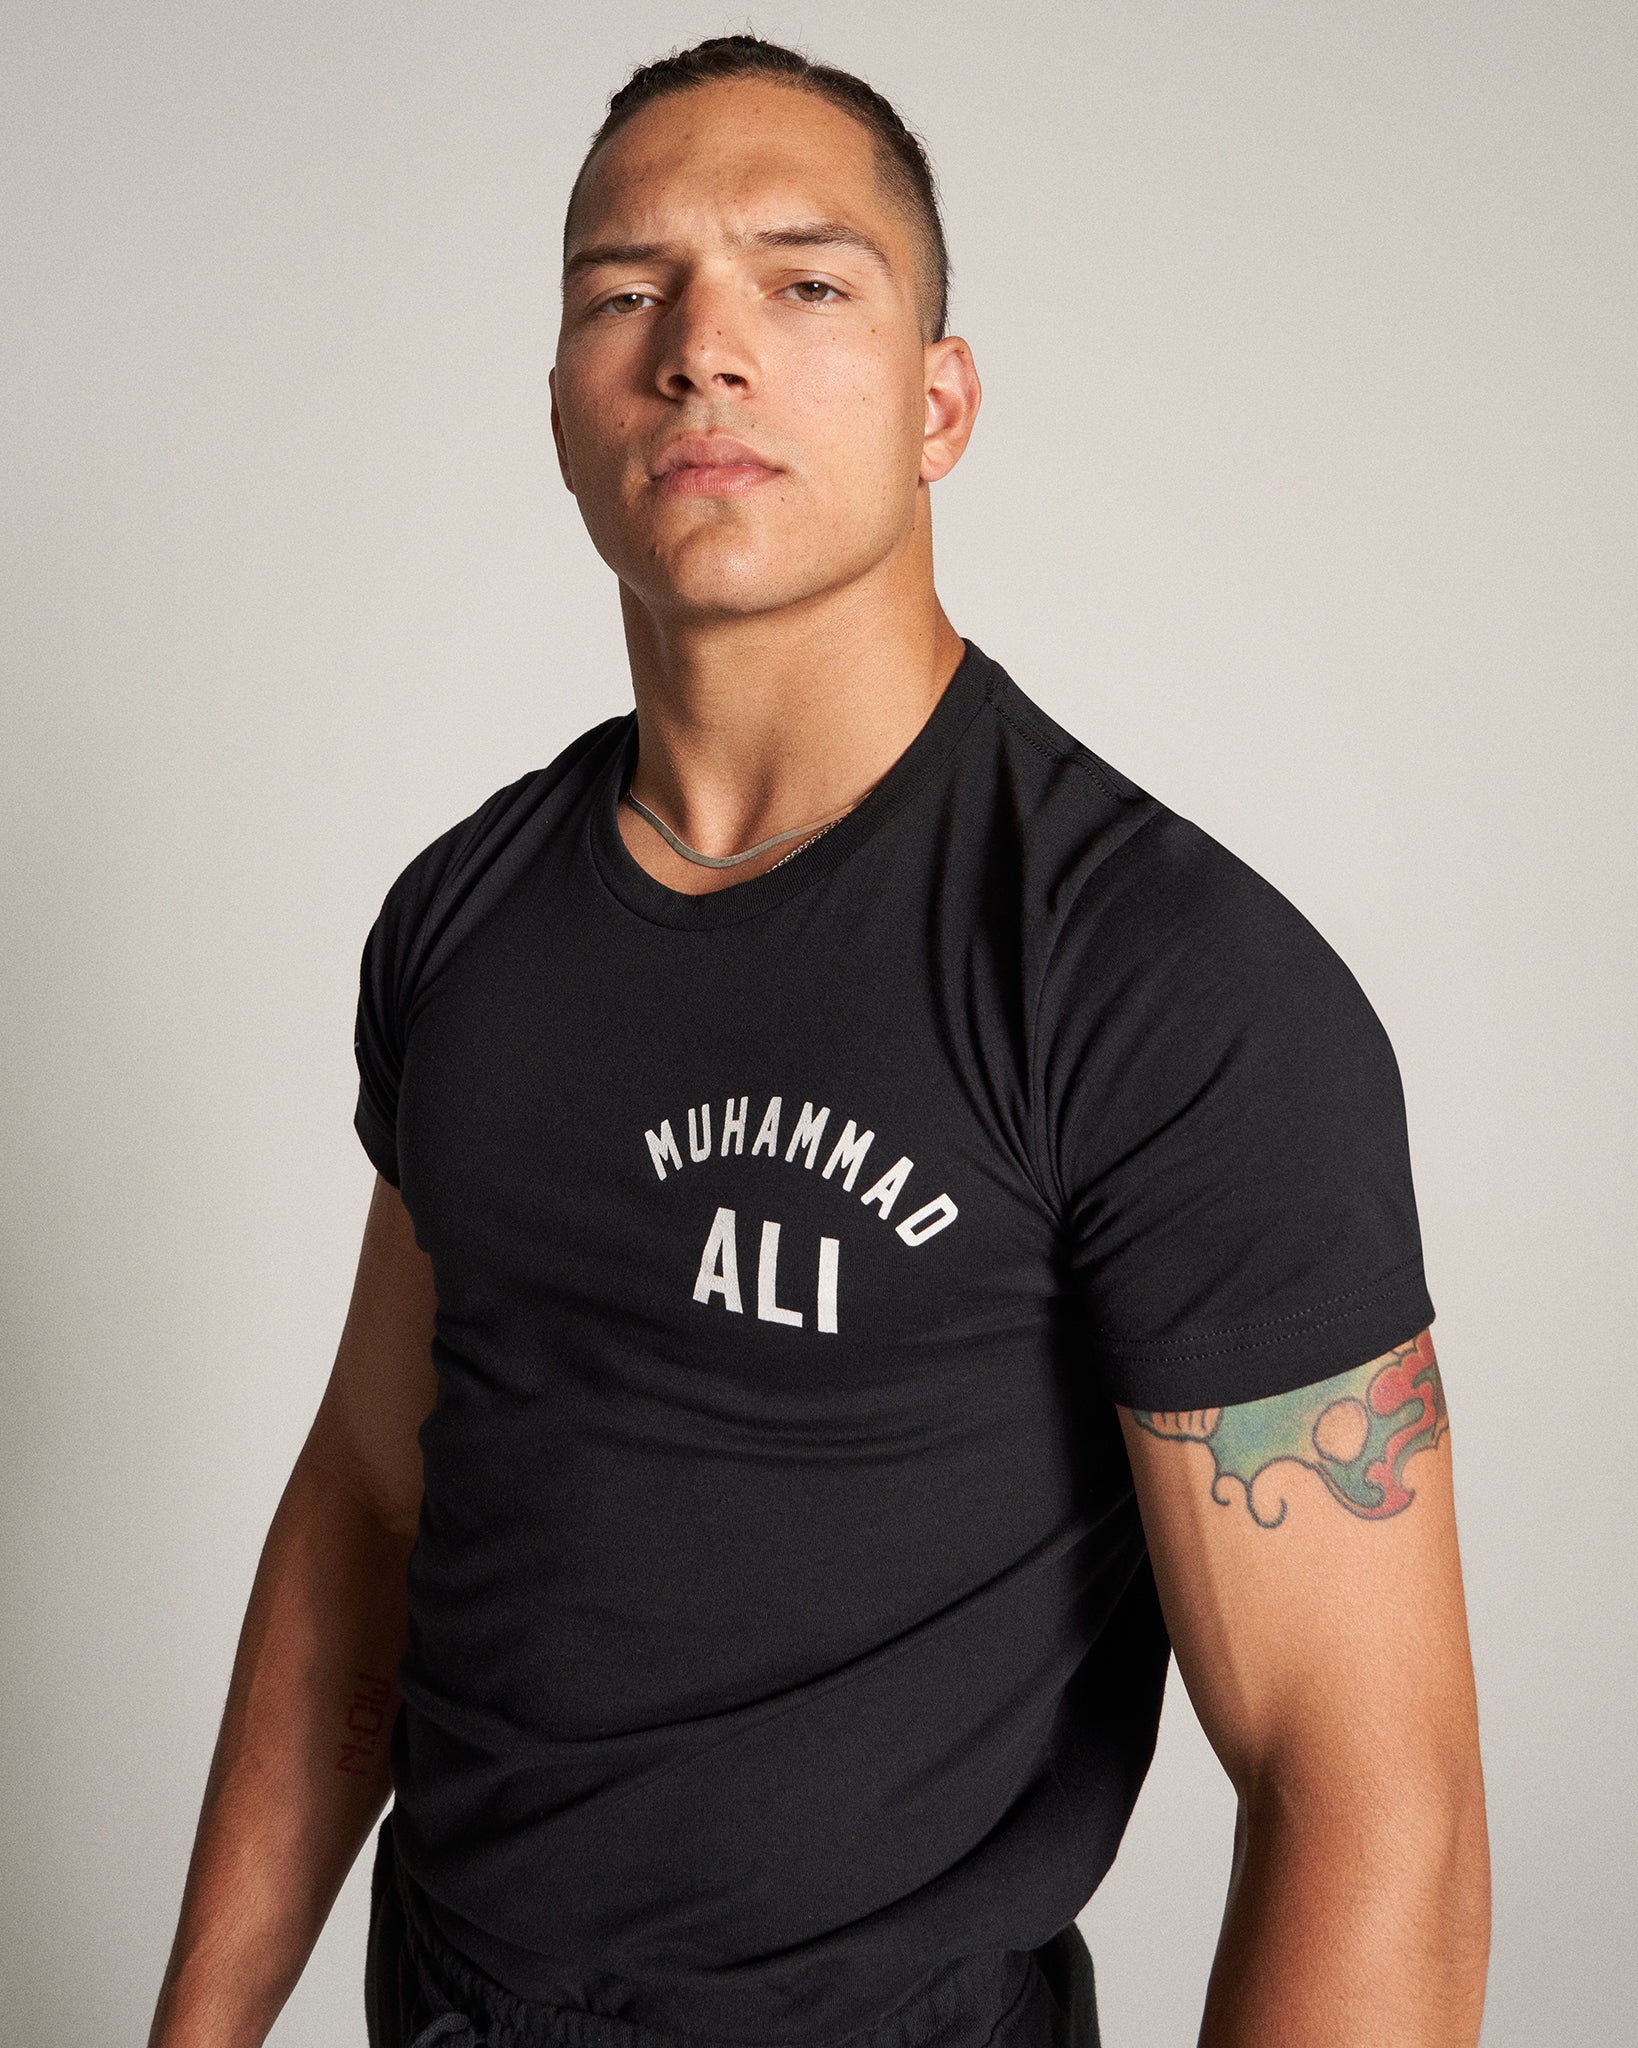 Muhammad Ali King of the Ring | T-Shirt RUDIS